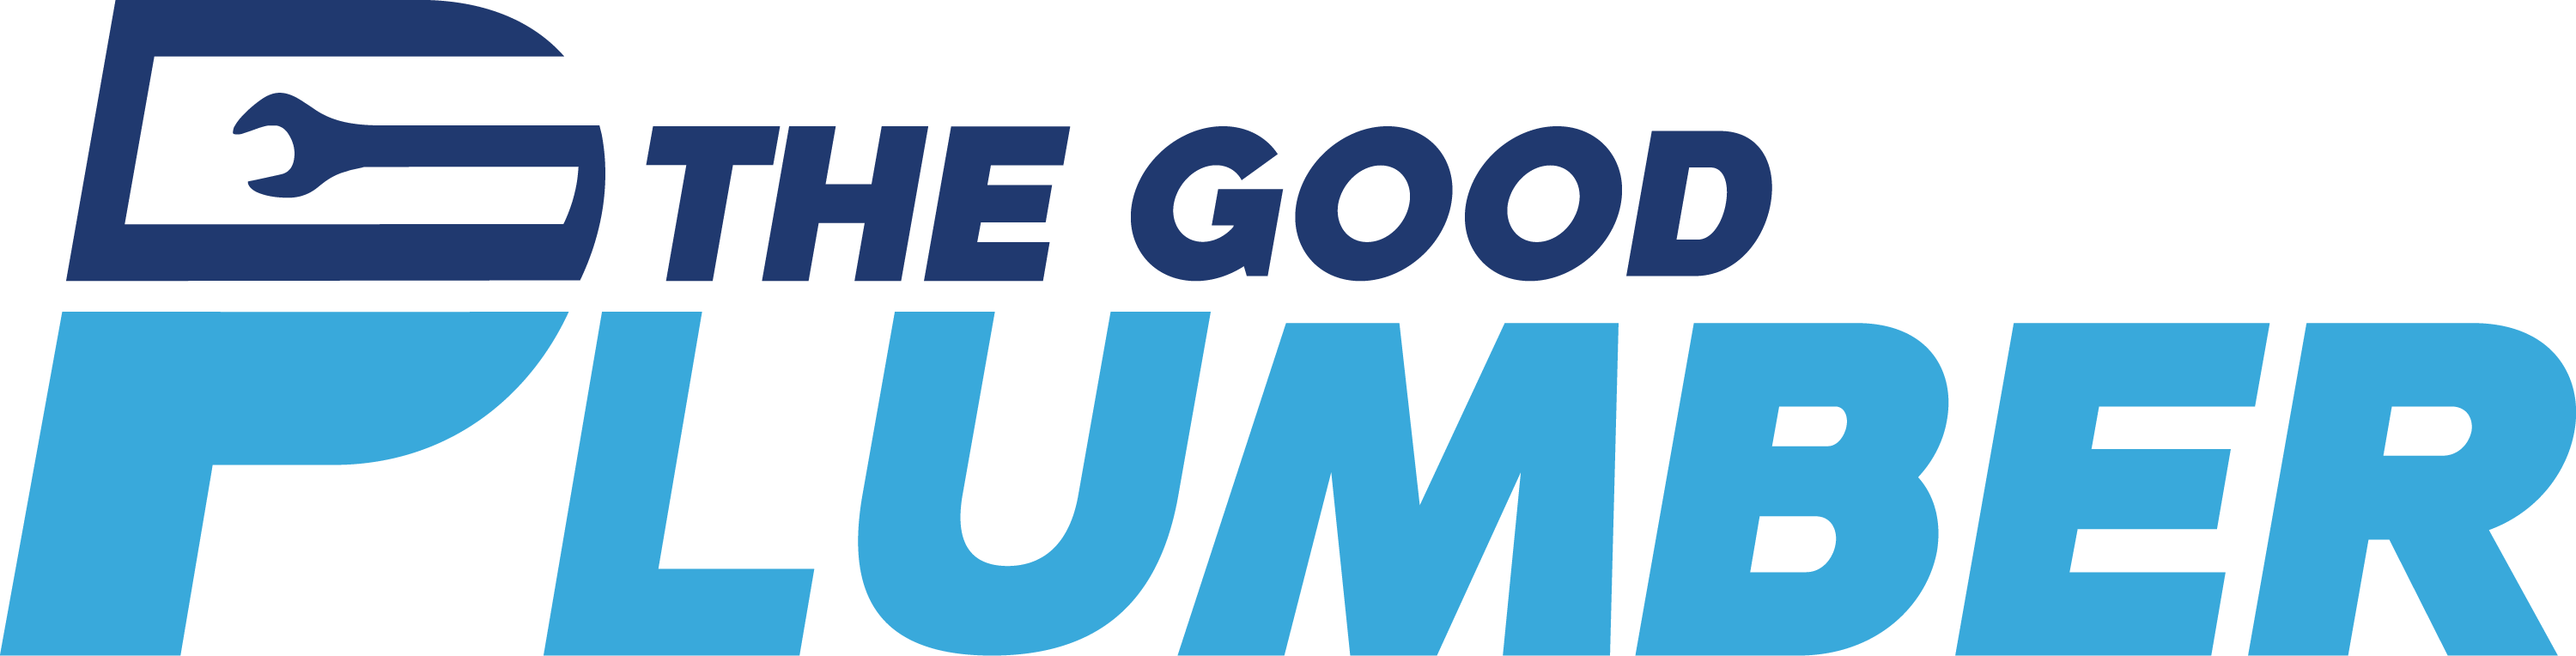 THE GOOD PLUMBER's logo